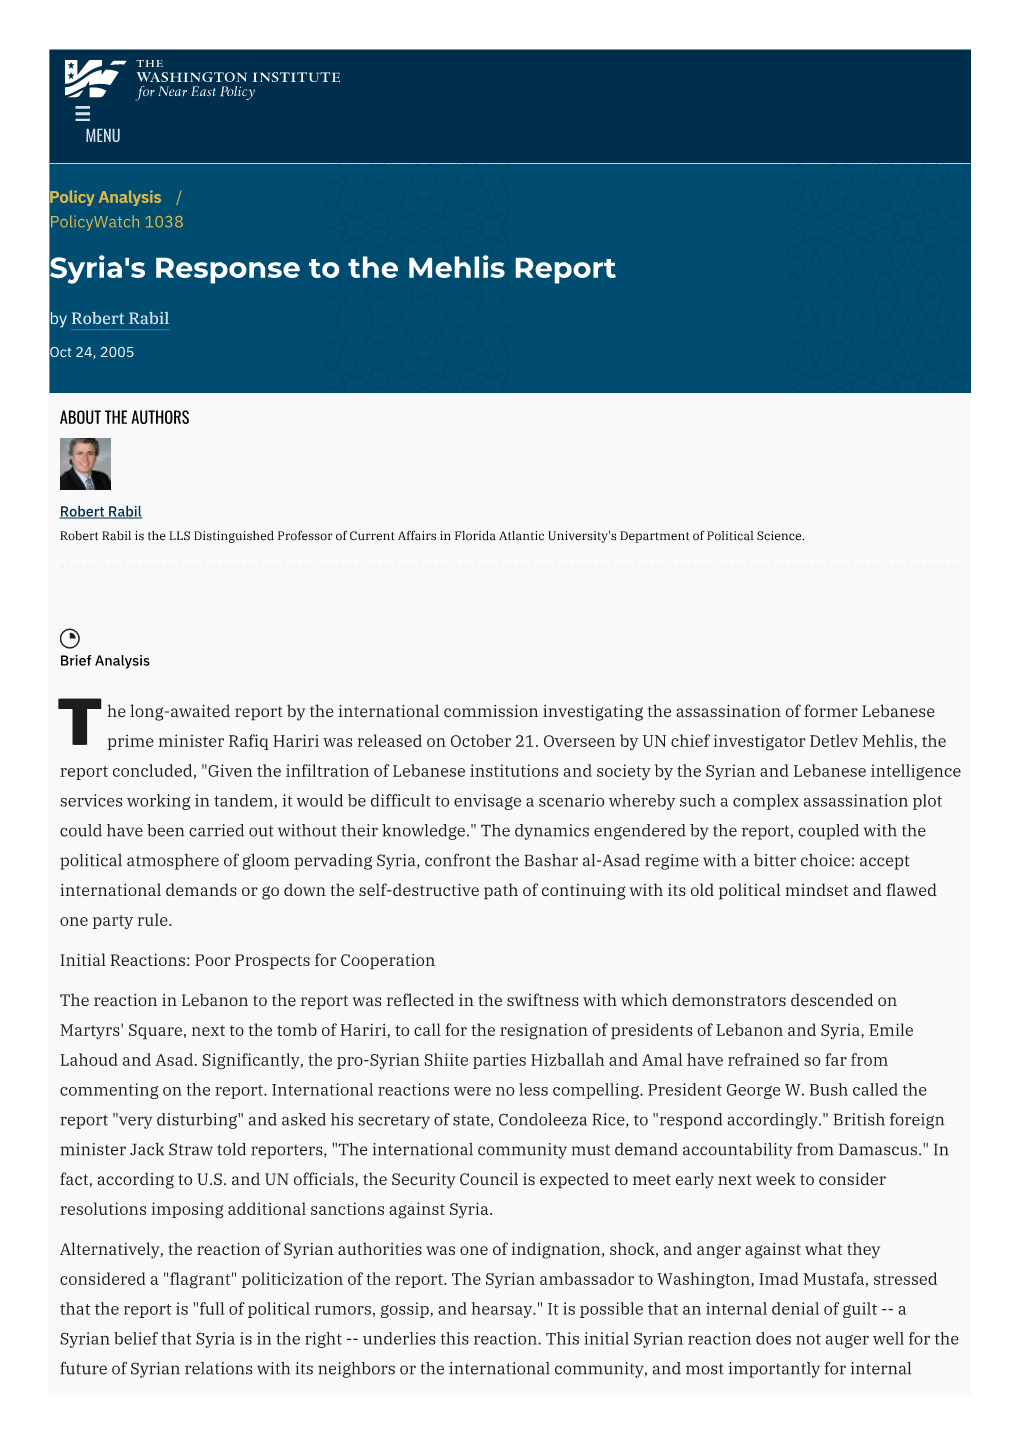 Syria's Response to the Mehlis Report | the Washington Institute